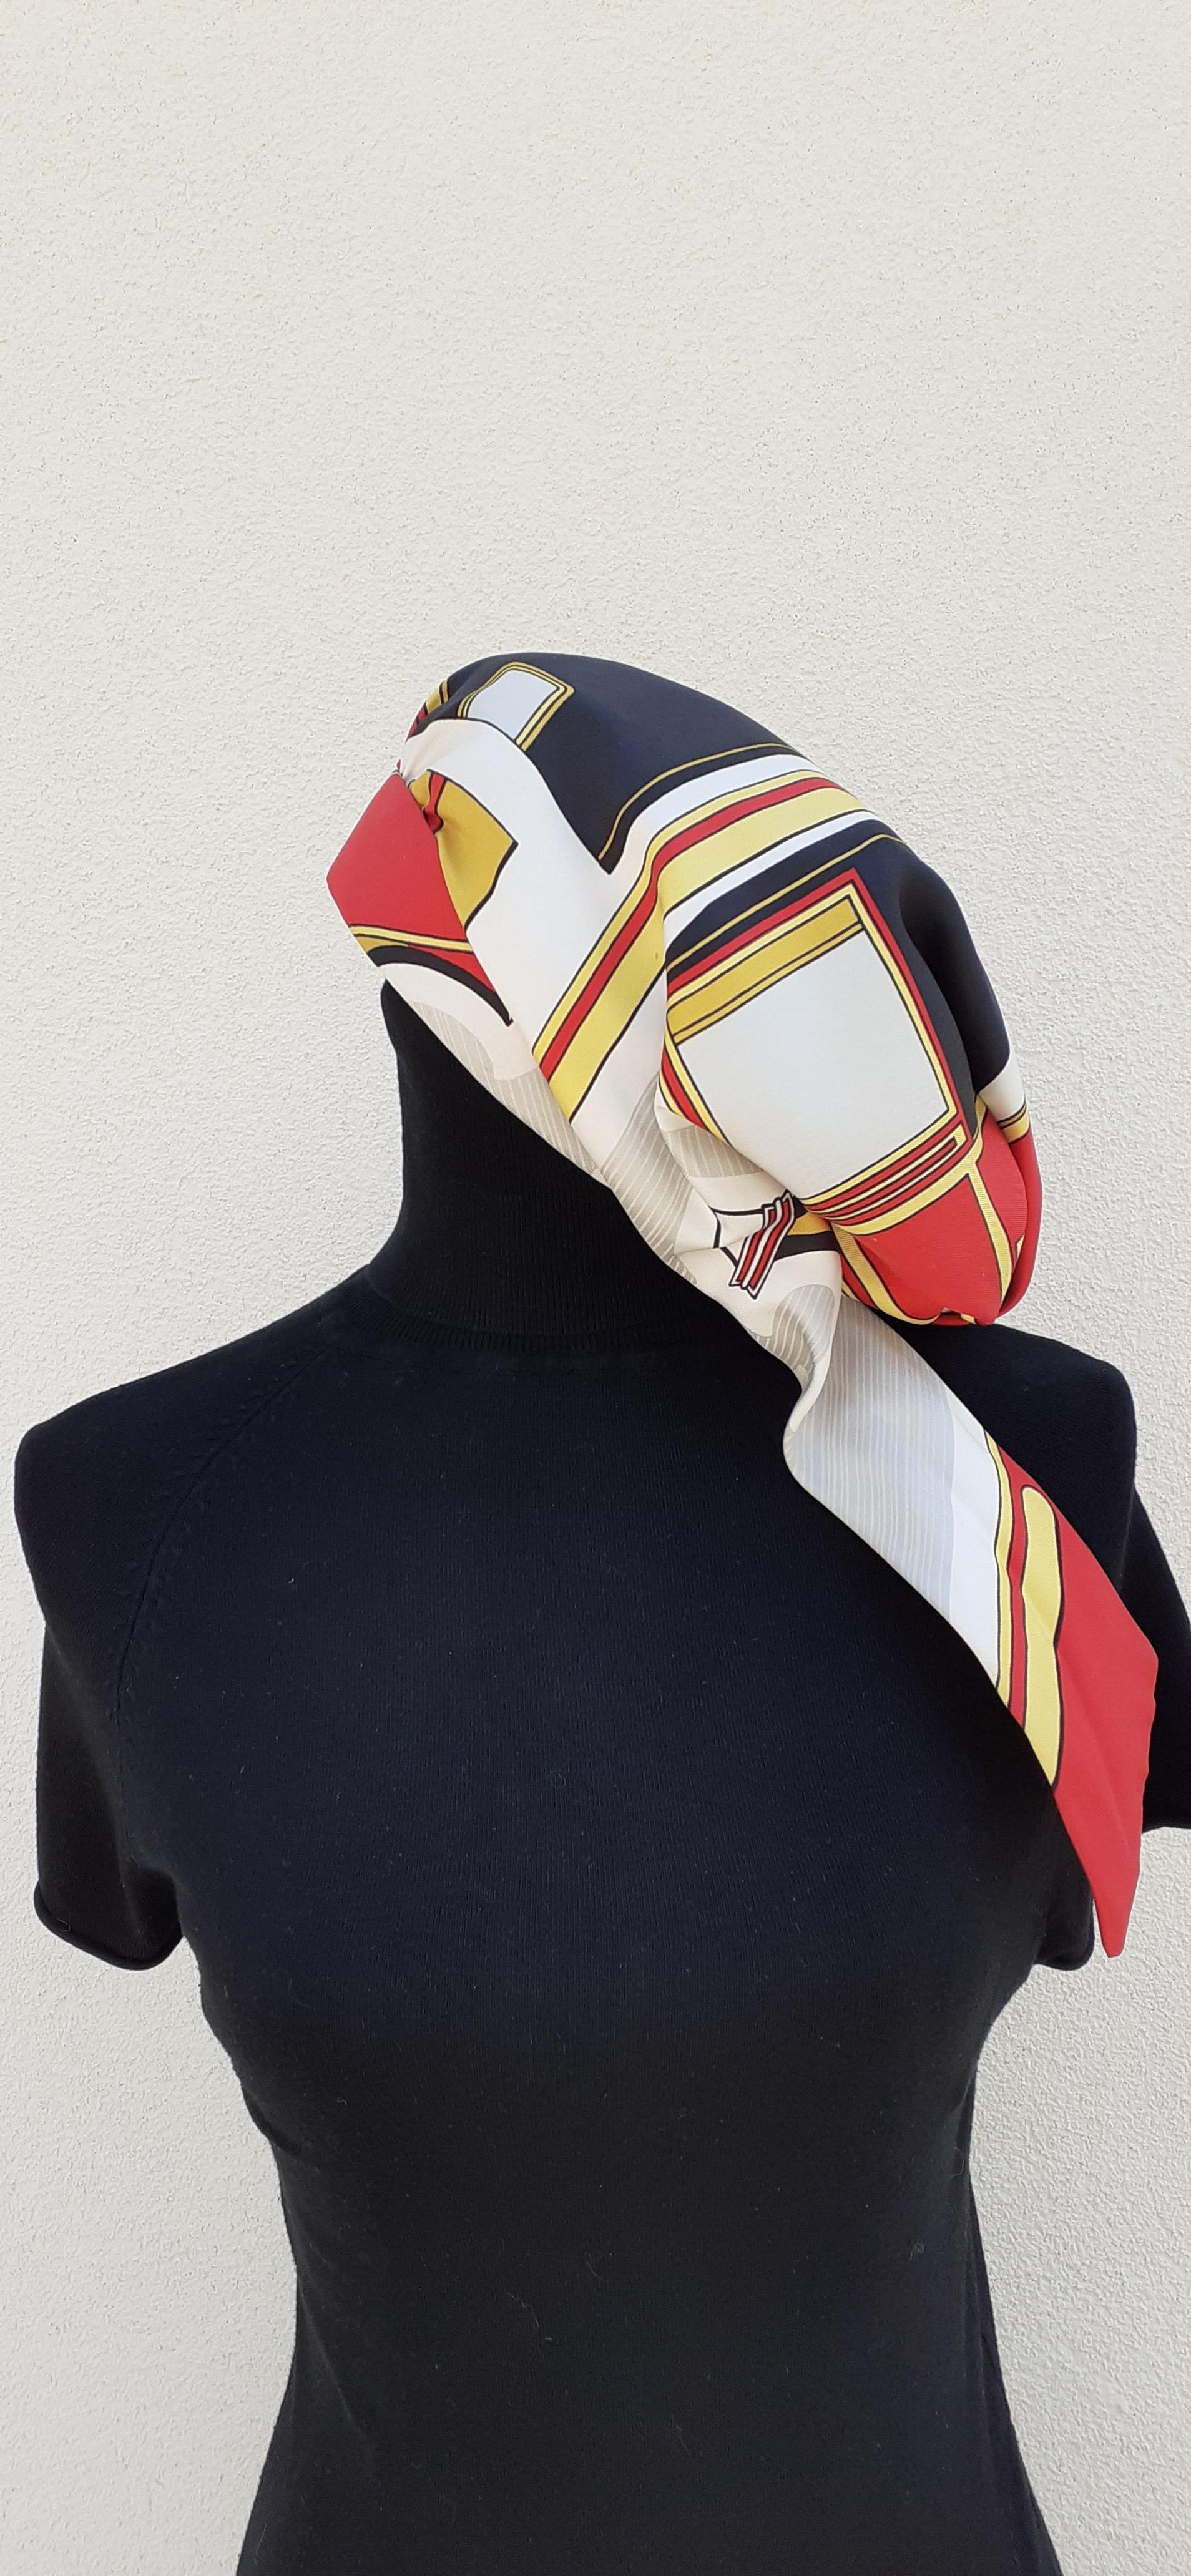 Seltene Authentische Hermès Kopftuch / Hut

Muster: 